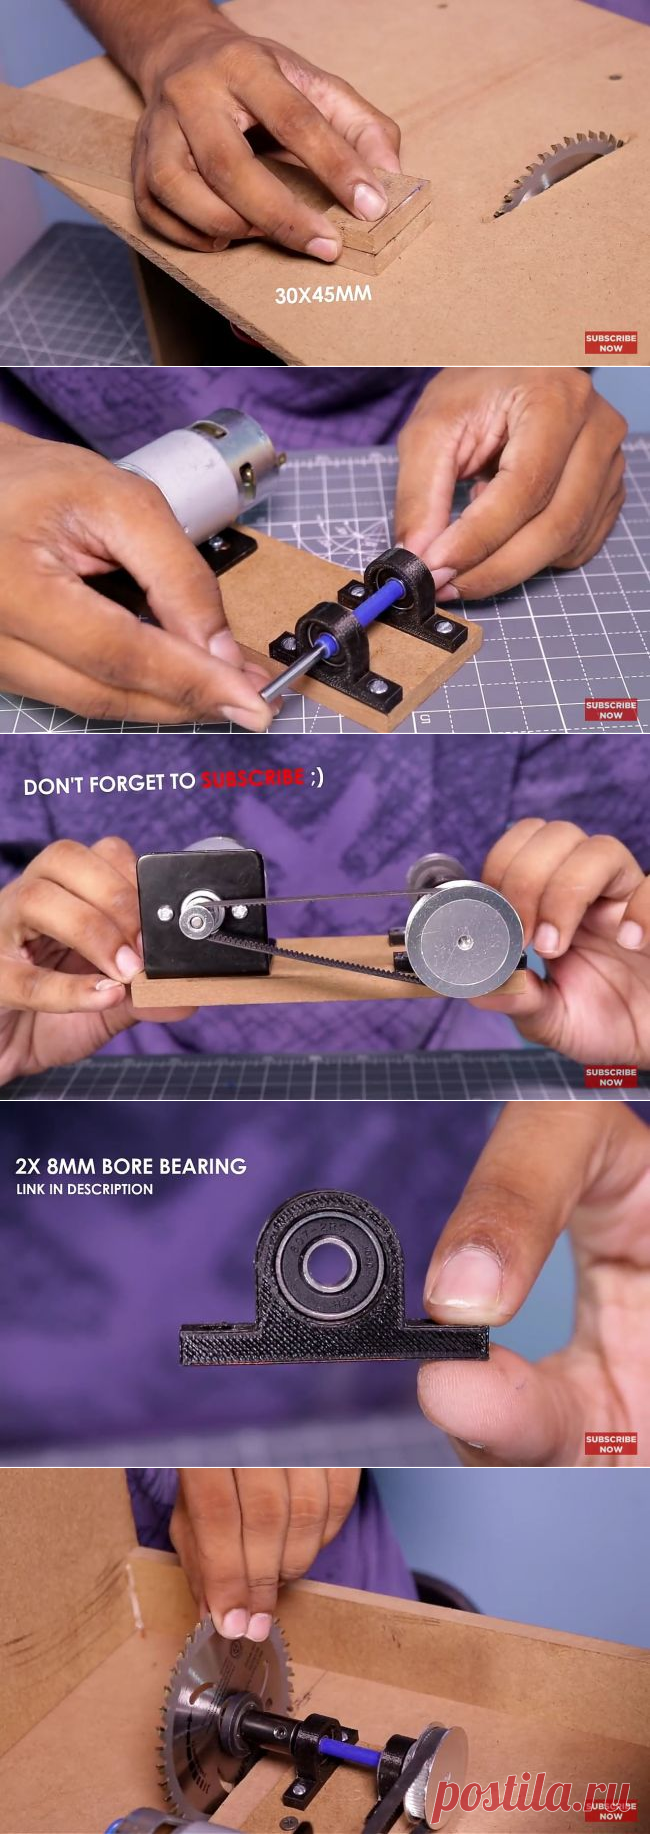 Как сделать миниатюрную циркулярную пилу — ОчУмелые ручки